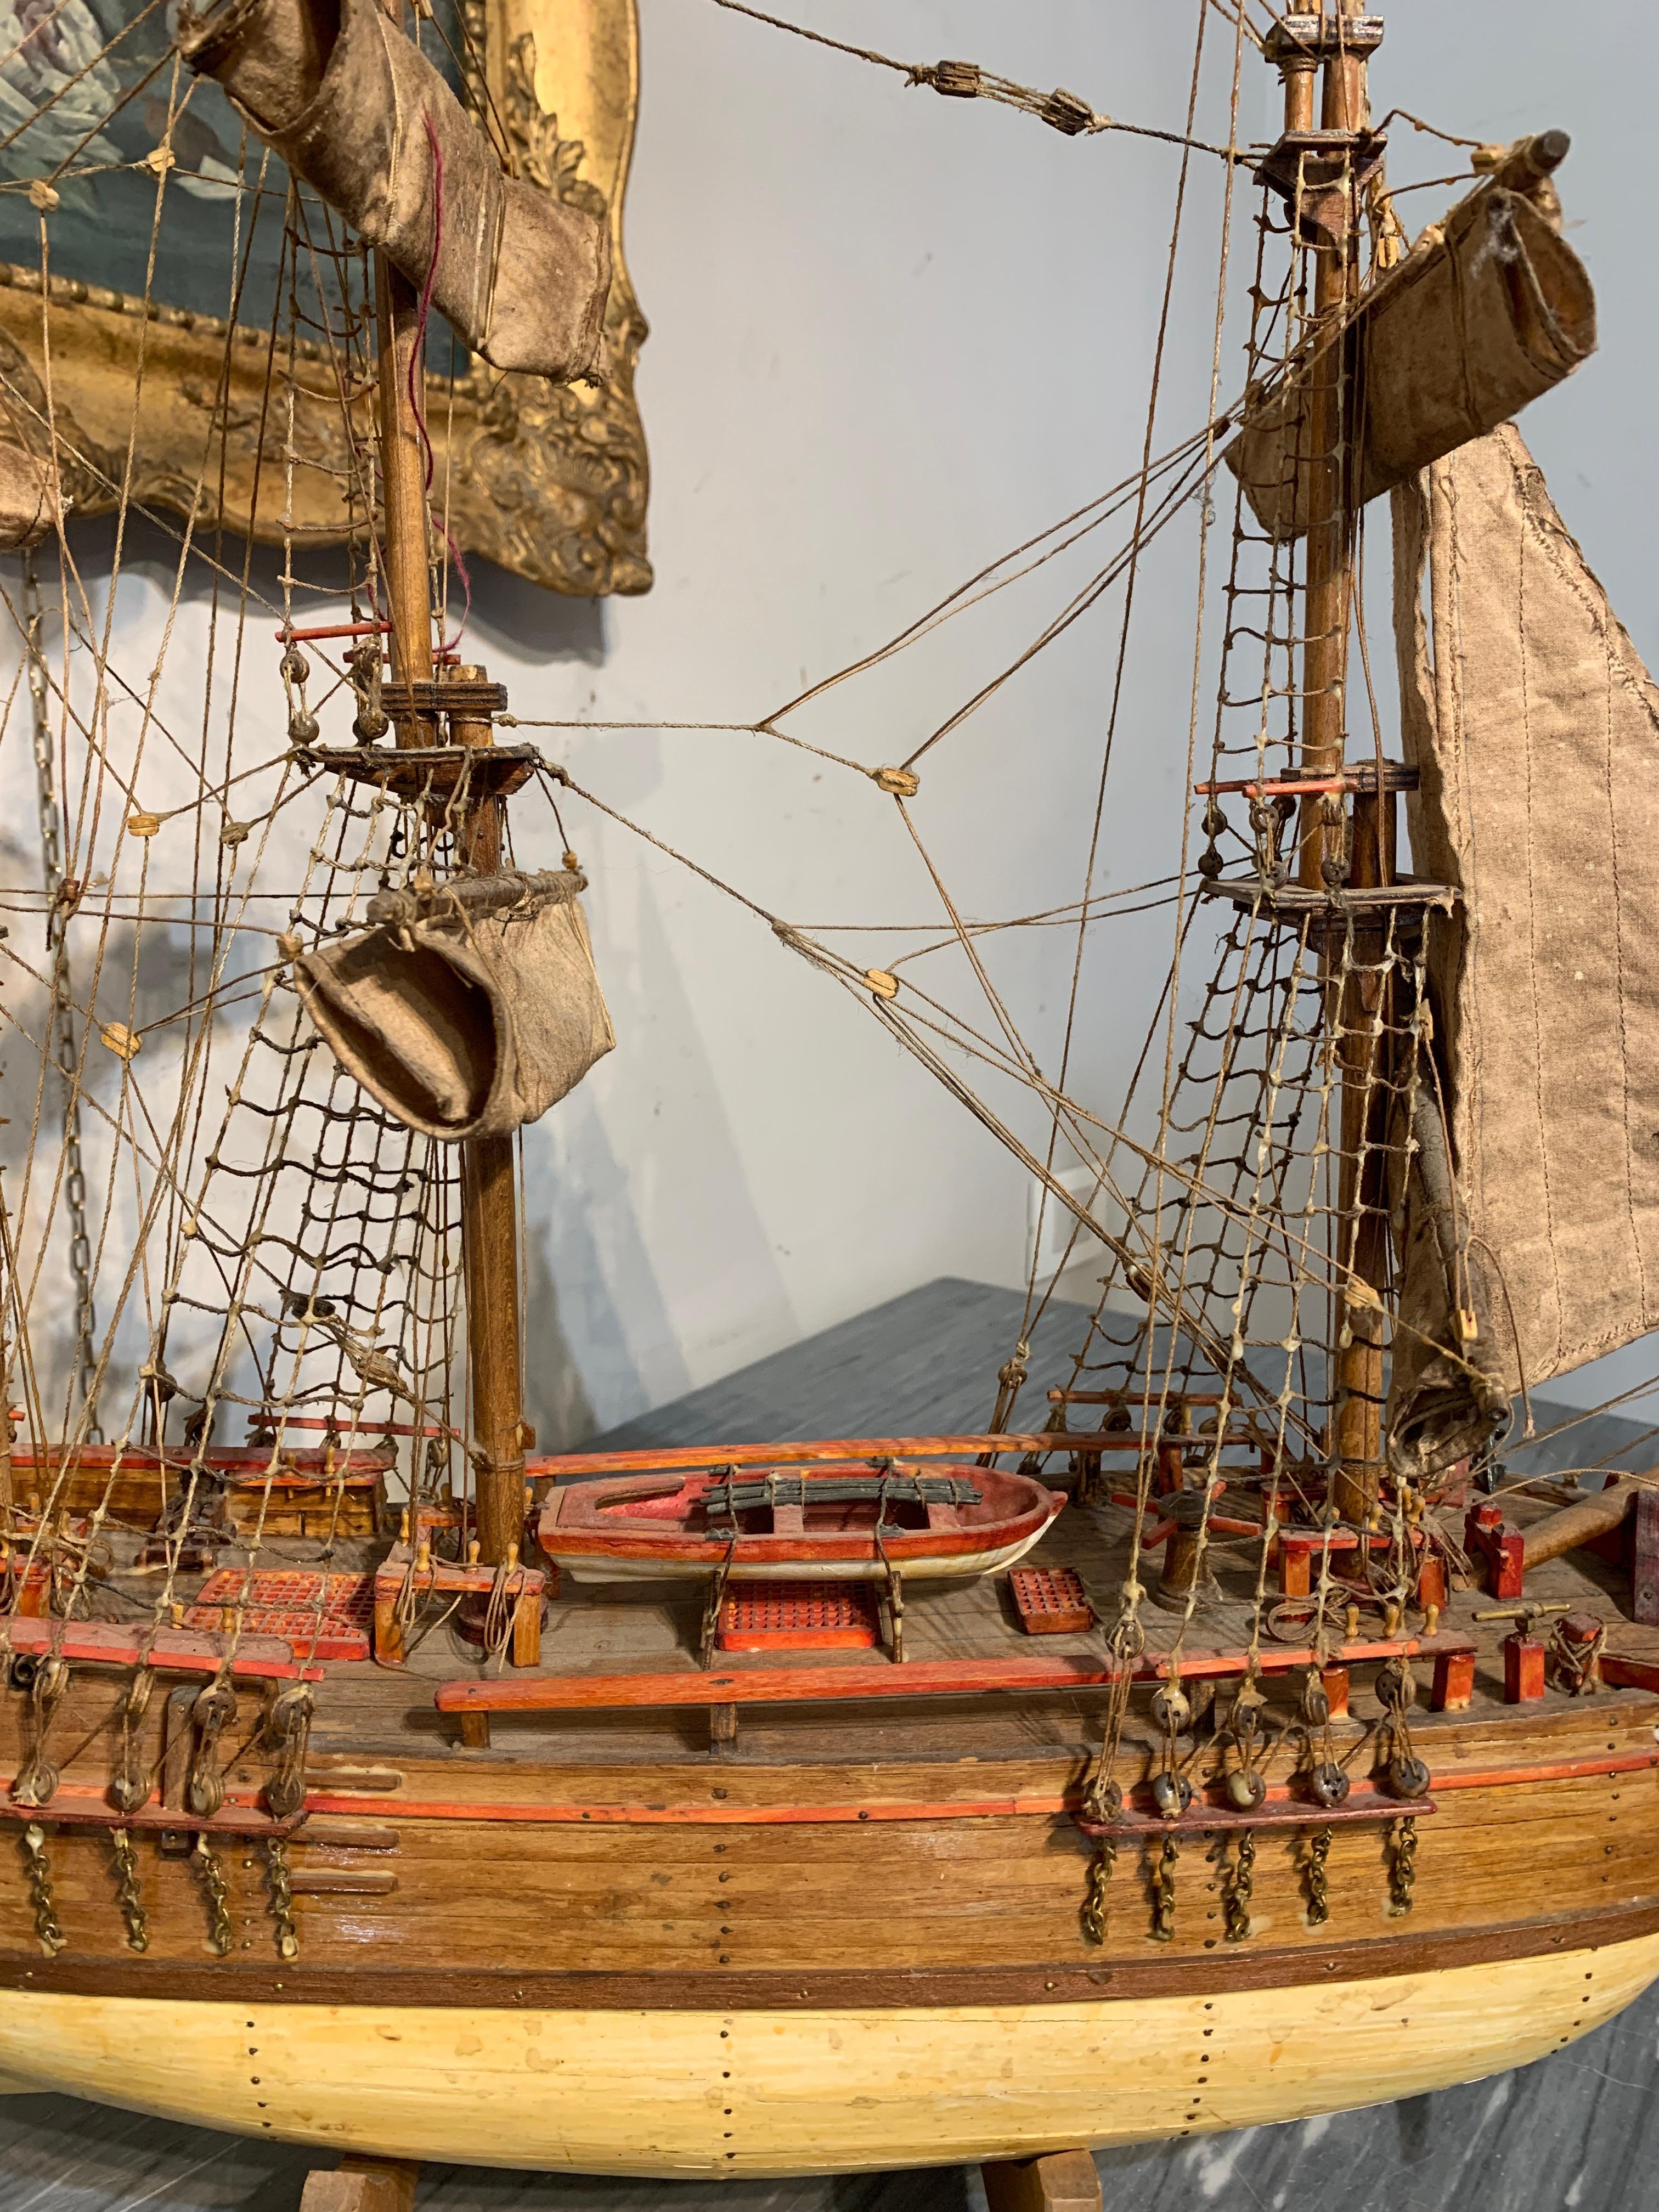 Petite maquette de voilier représentant le célèbre navire marchand anglais HMS Bounty. Le modèle et ses détails sont fabriqués à la main, avec beaucoup de soin et de raffinement (canot de sauvetage, cordages, voiles, ancre). Le modèle peut être